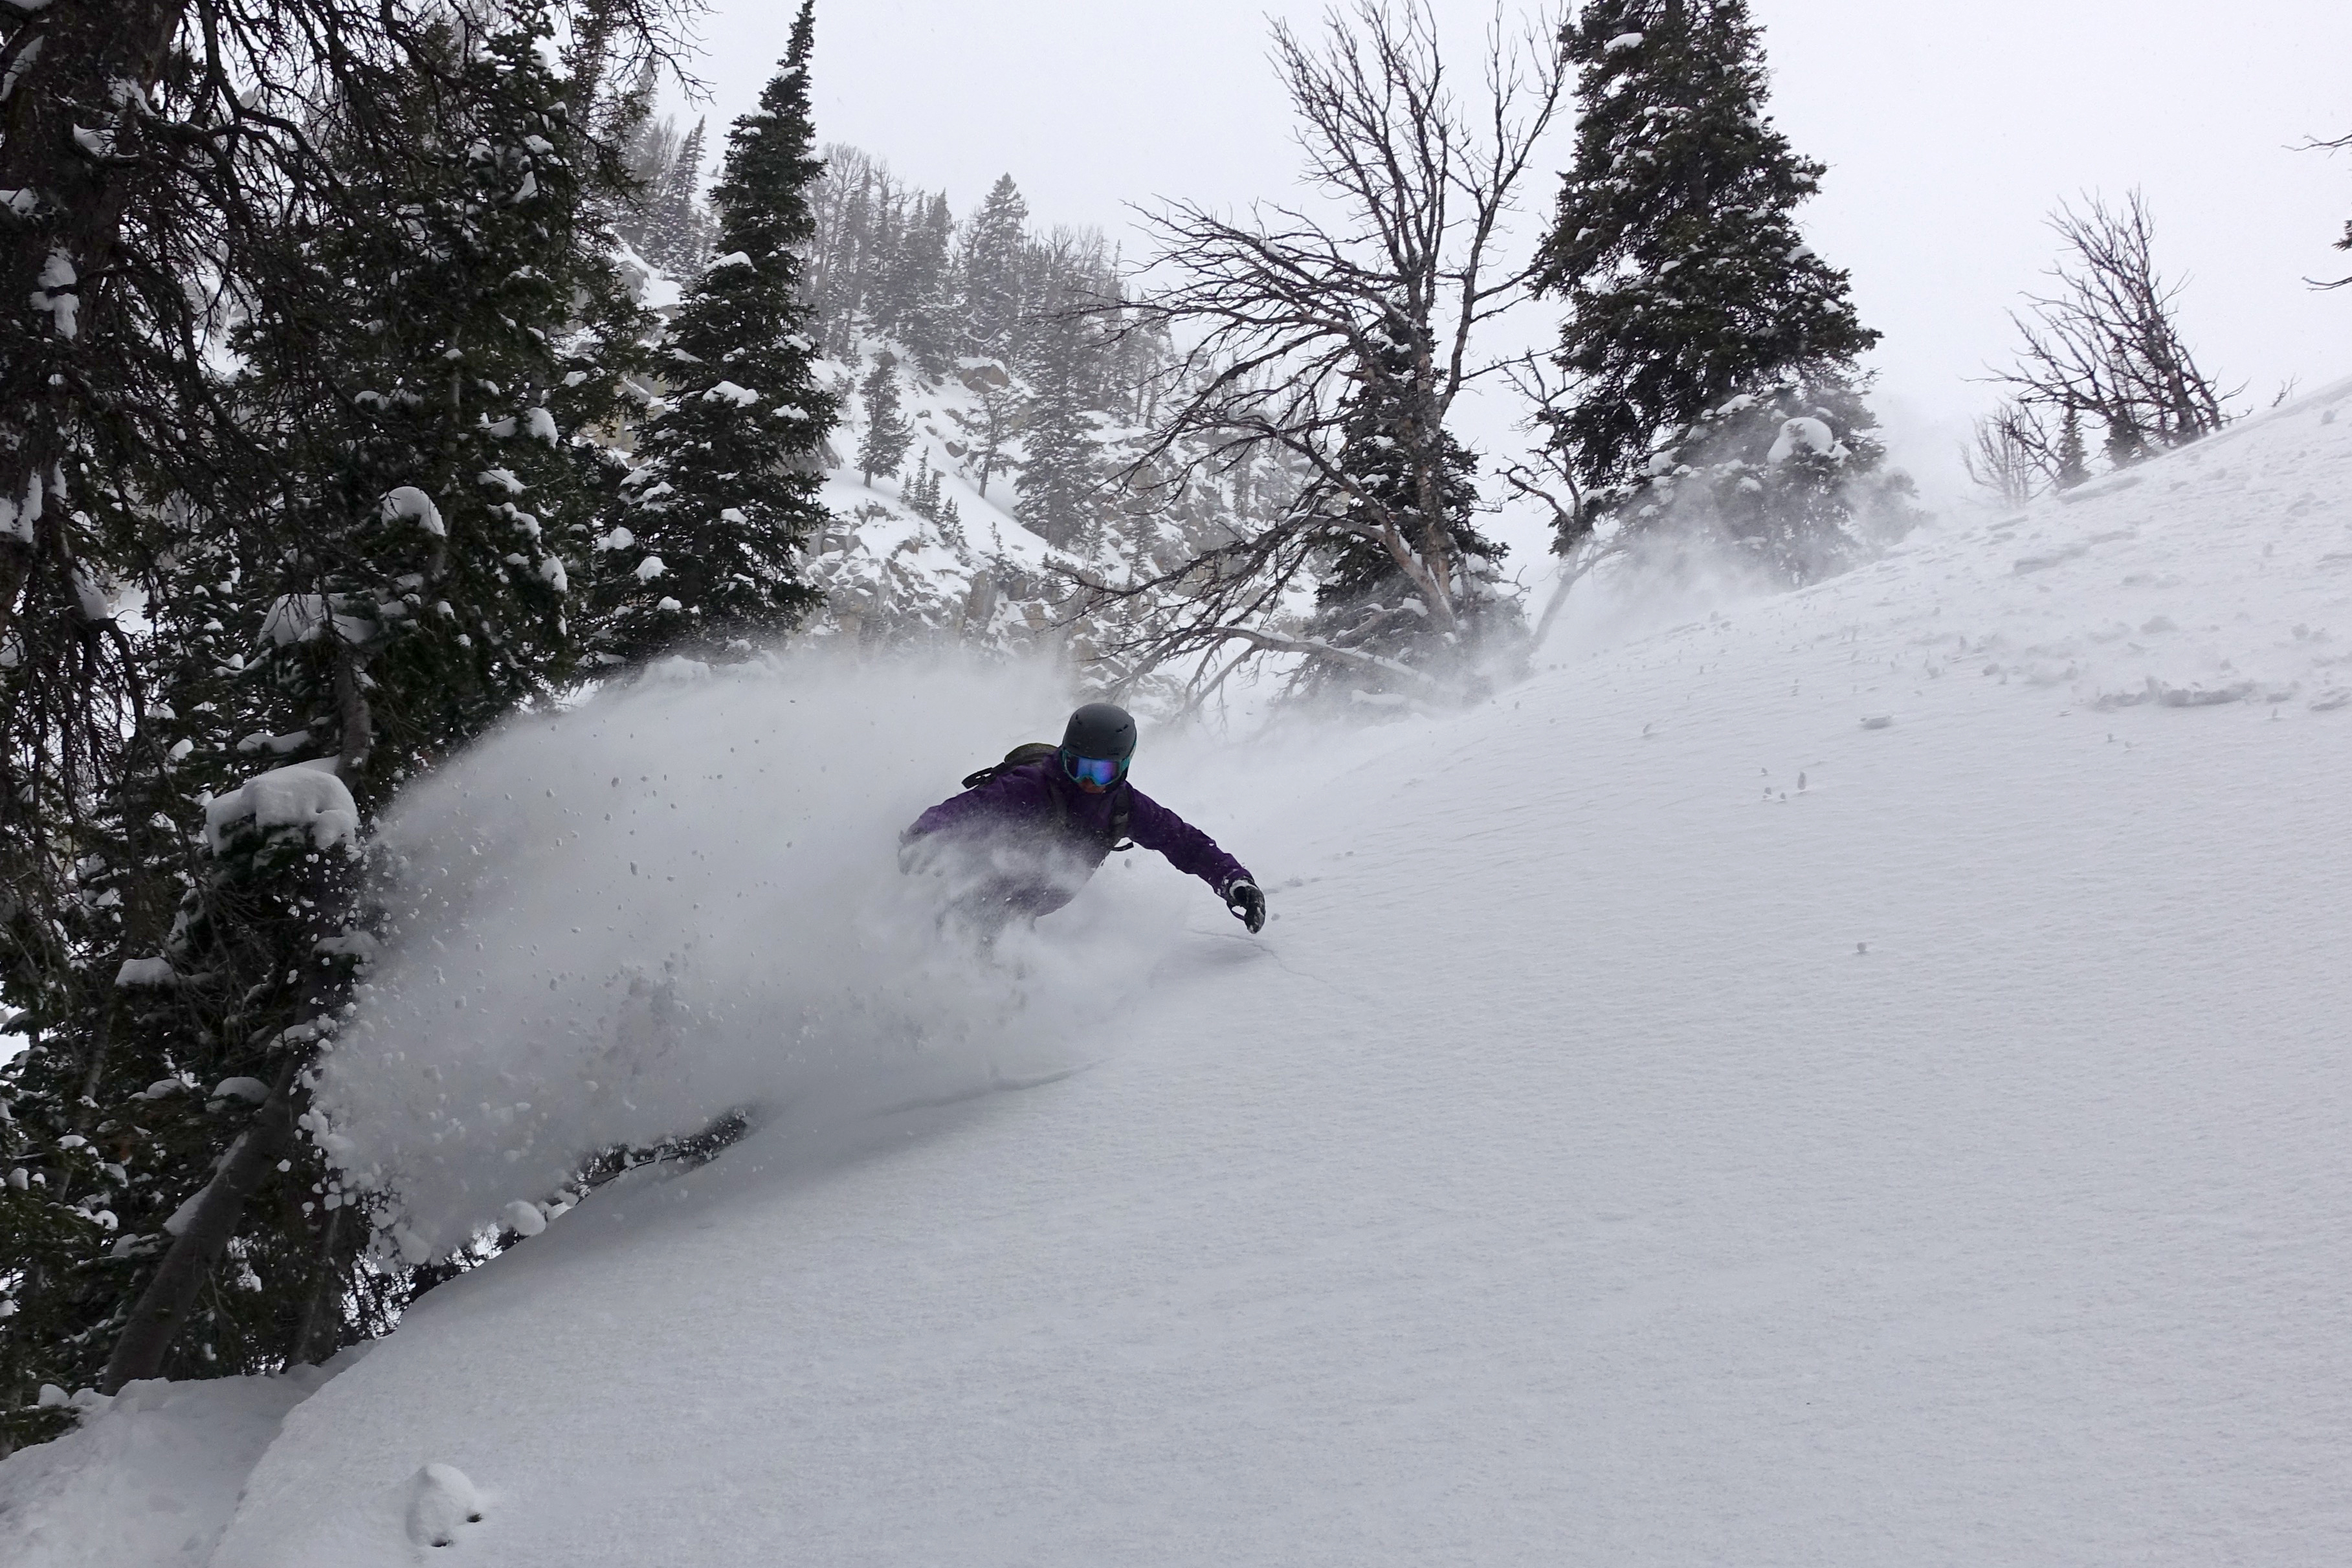 Brent Fullerton enjoying the new snow! 